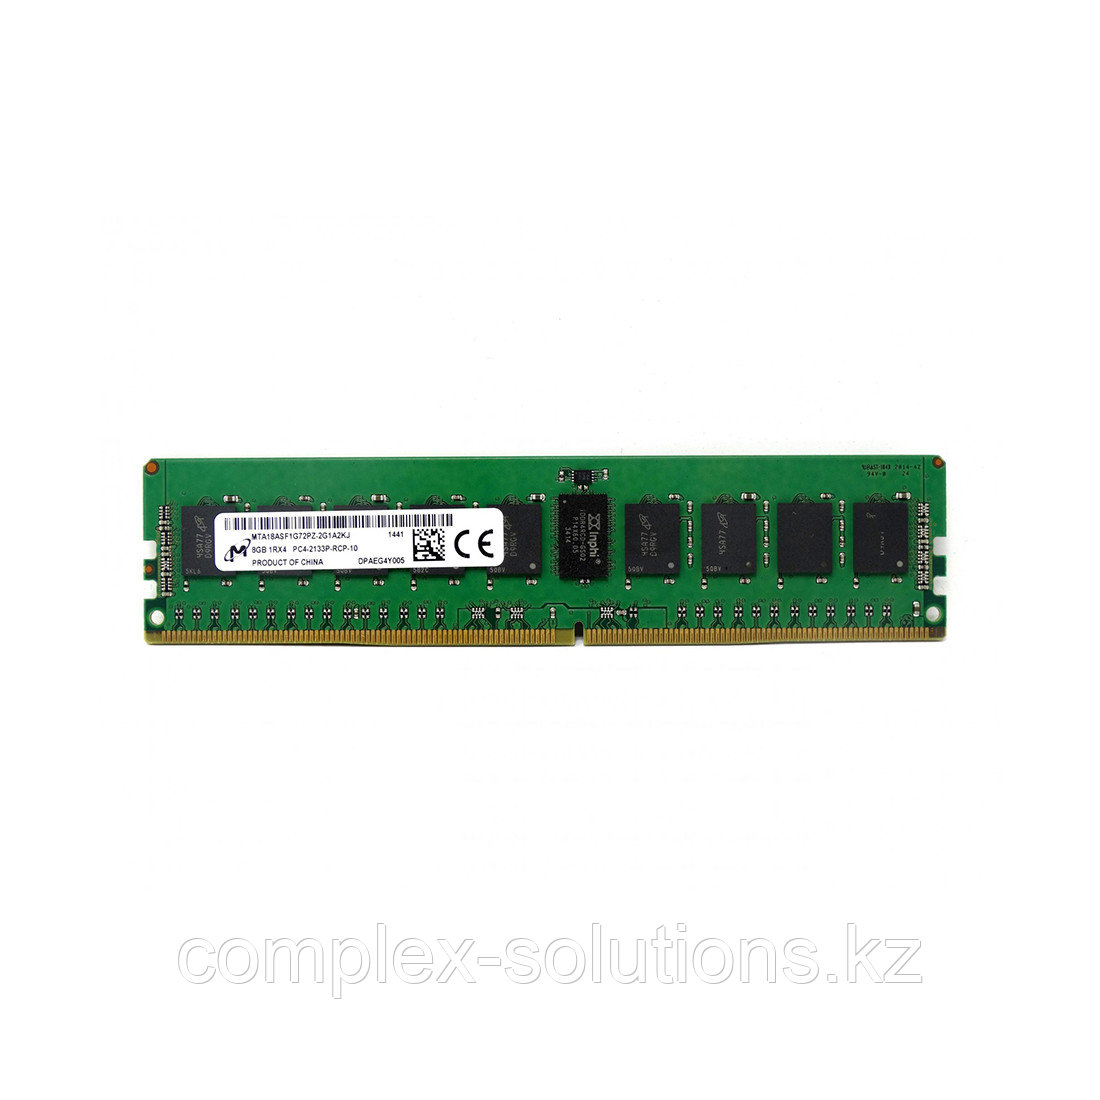 Модуль памяти ОЗУ Micron DDR4 ECC RDIMM 16GB 3200MHz